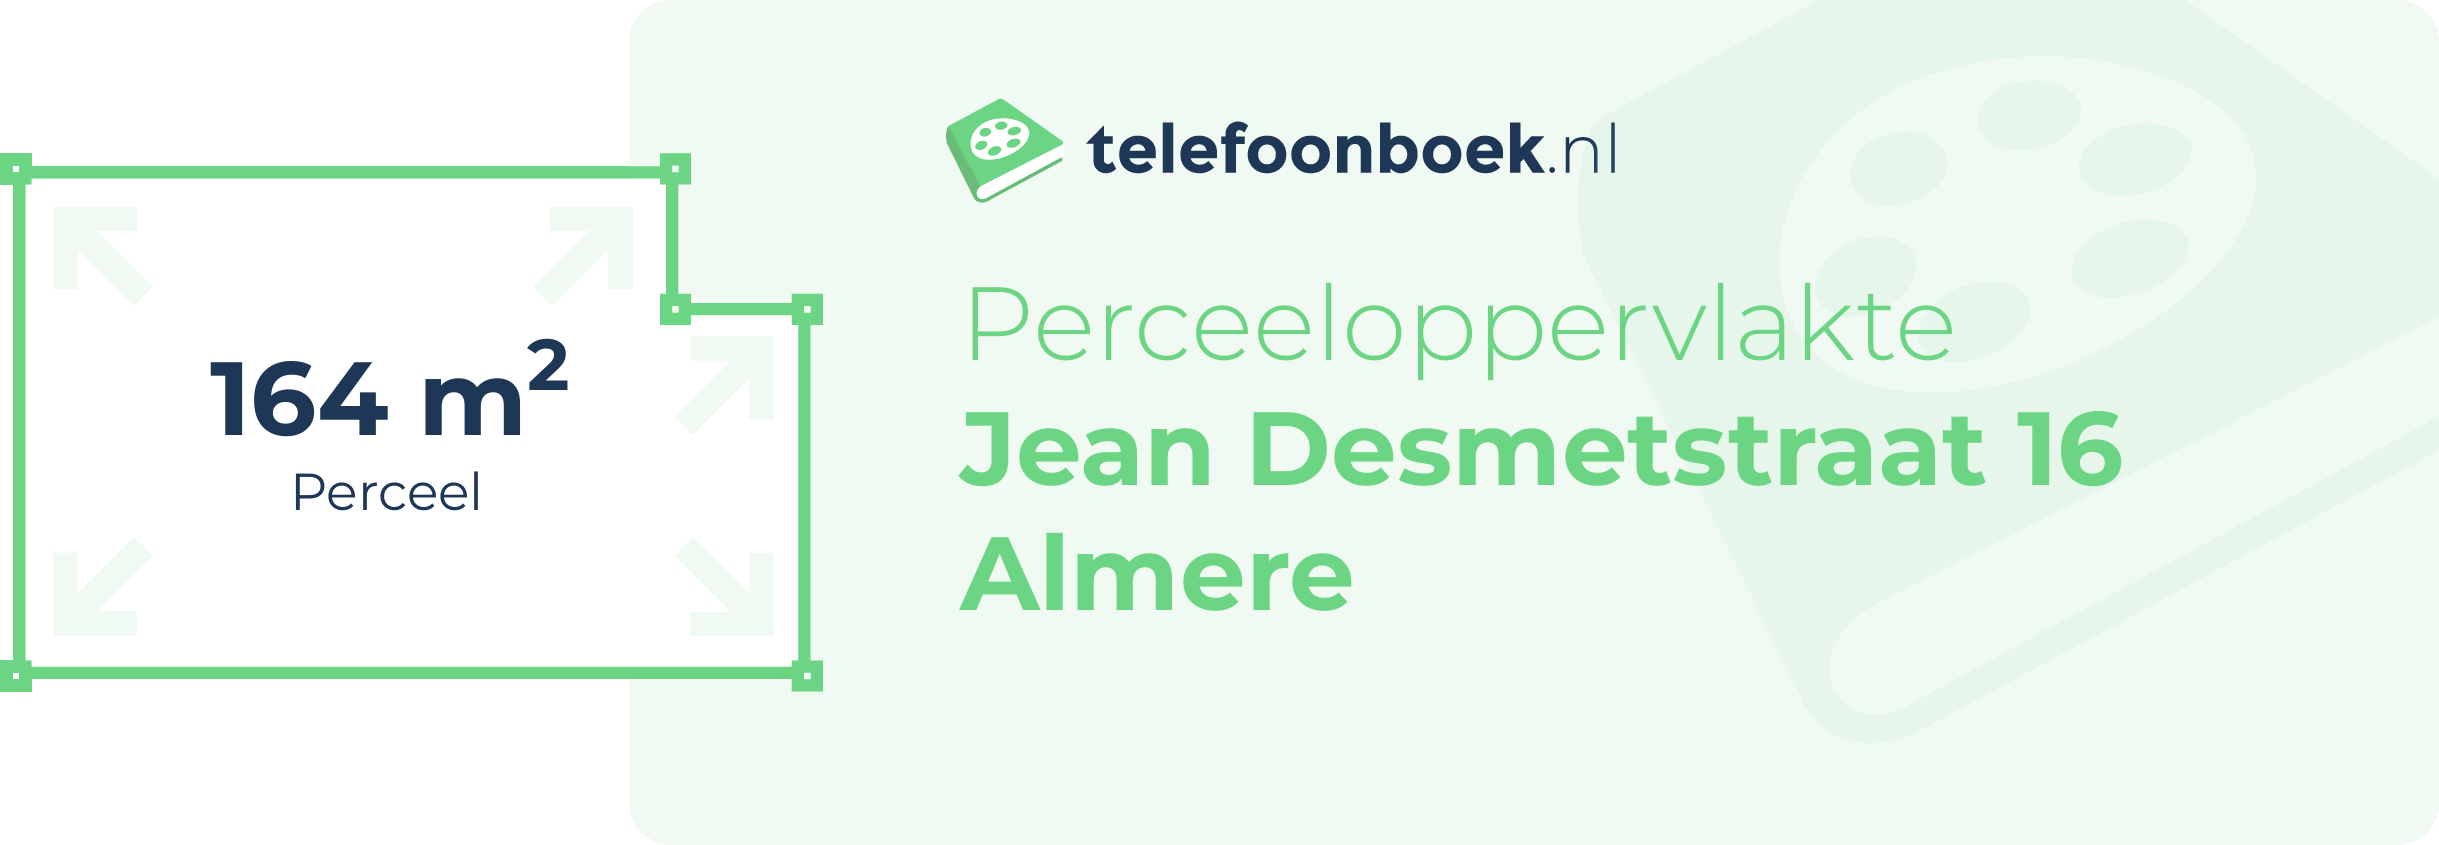 Perceeloppervlakte Jean Desmetstraat 16 Almere